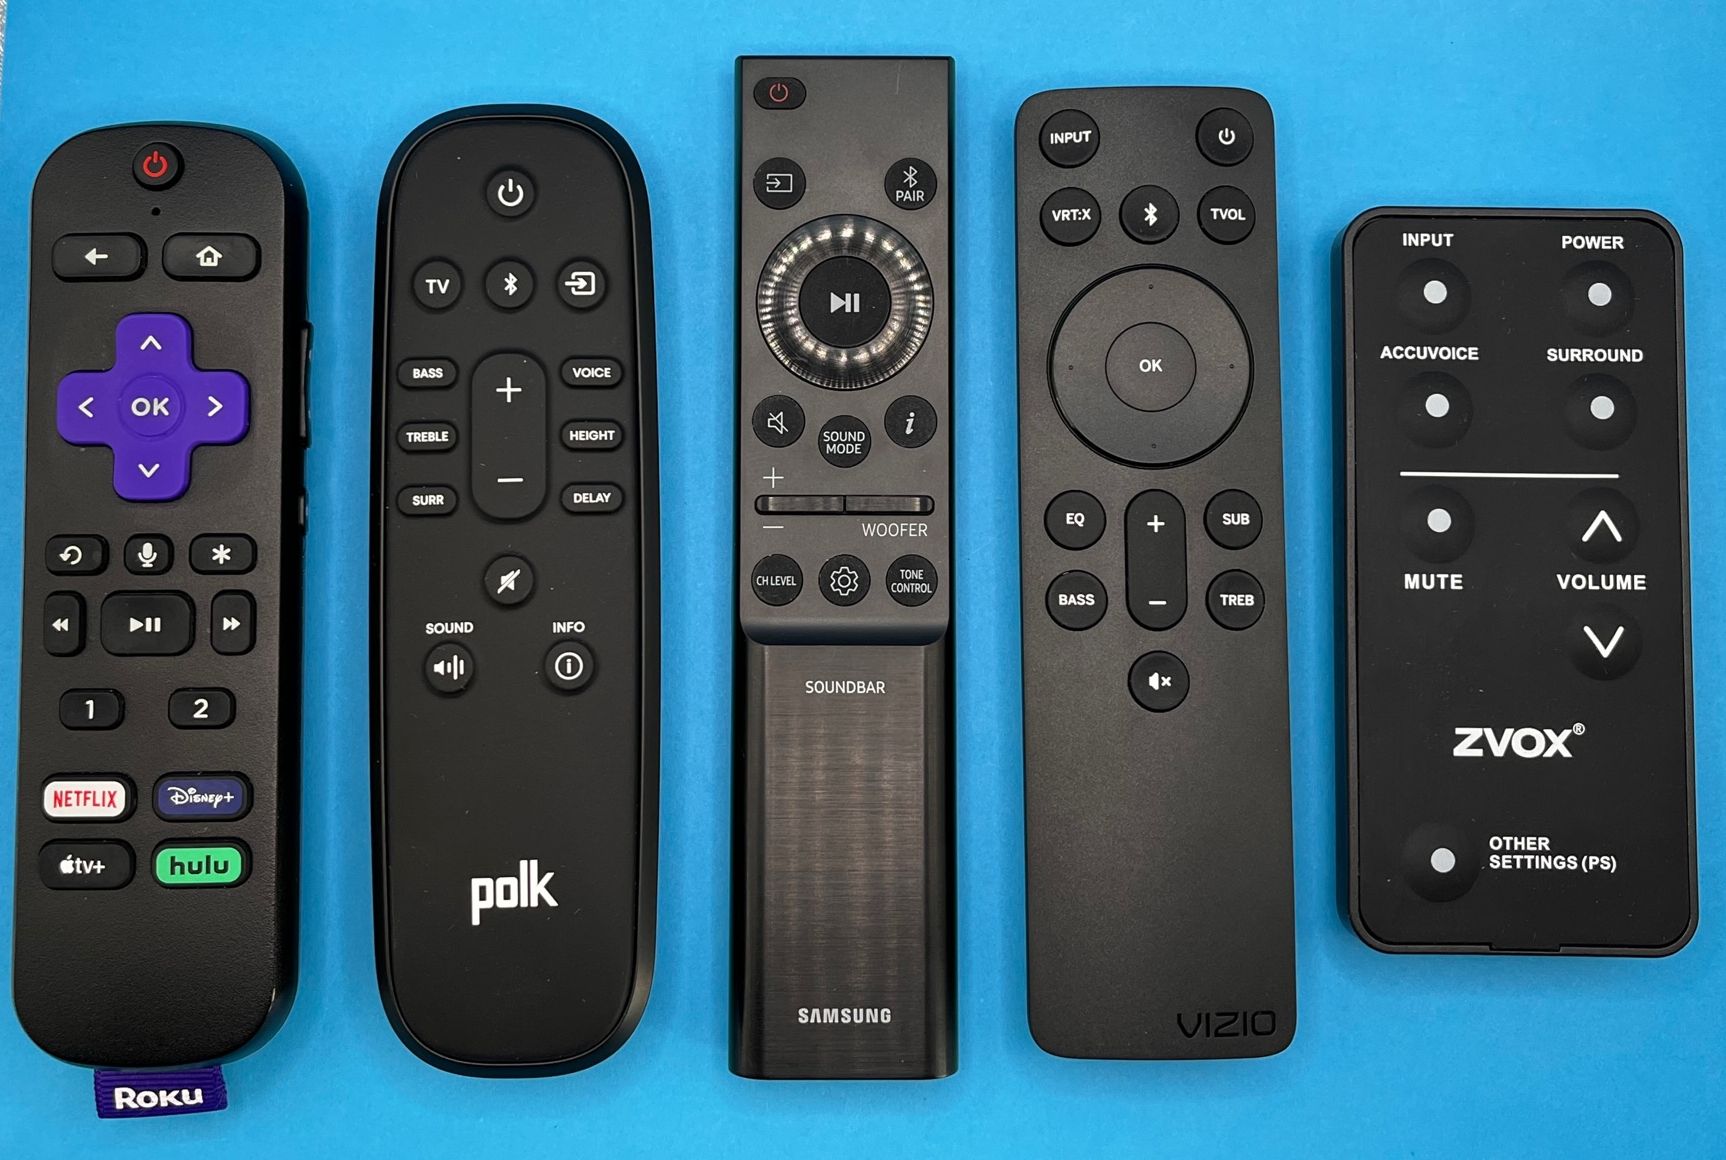 Remotes from Roku, Polk, Samsung, Vizio and Zvox.